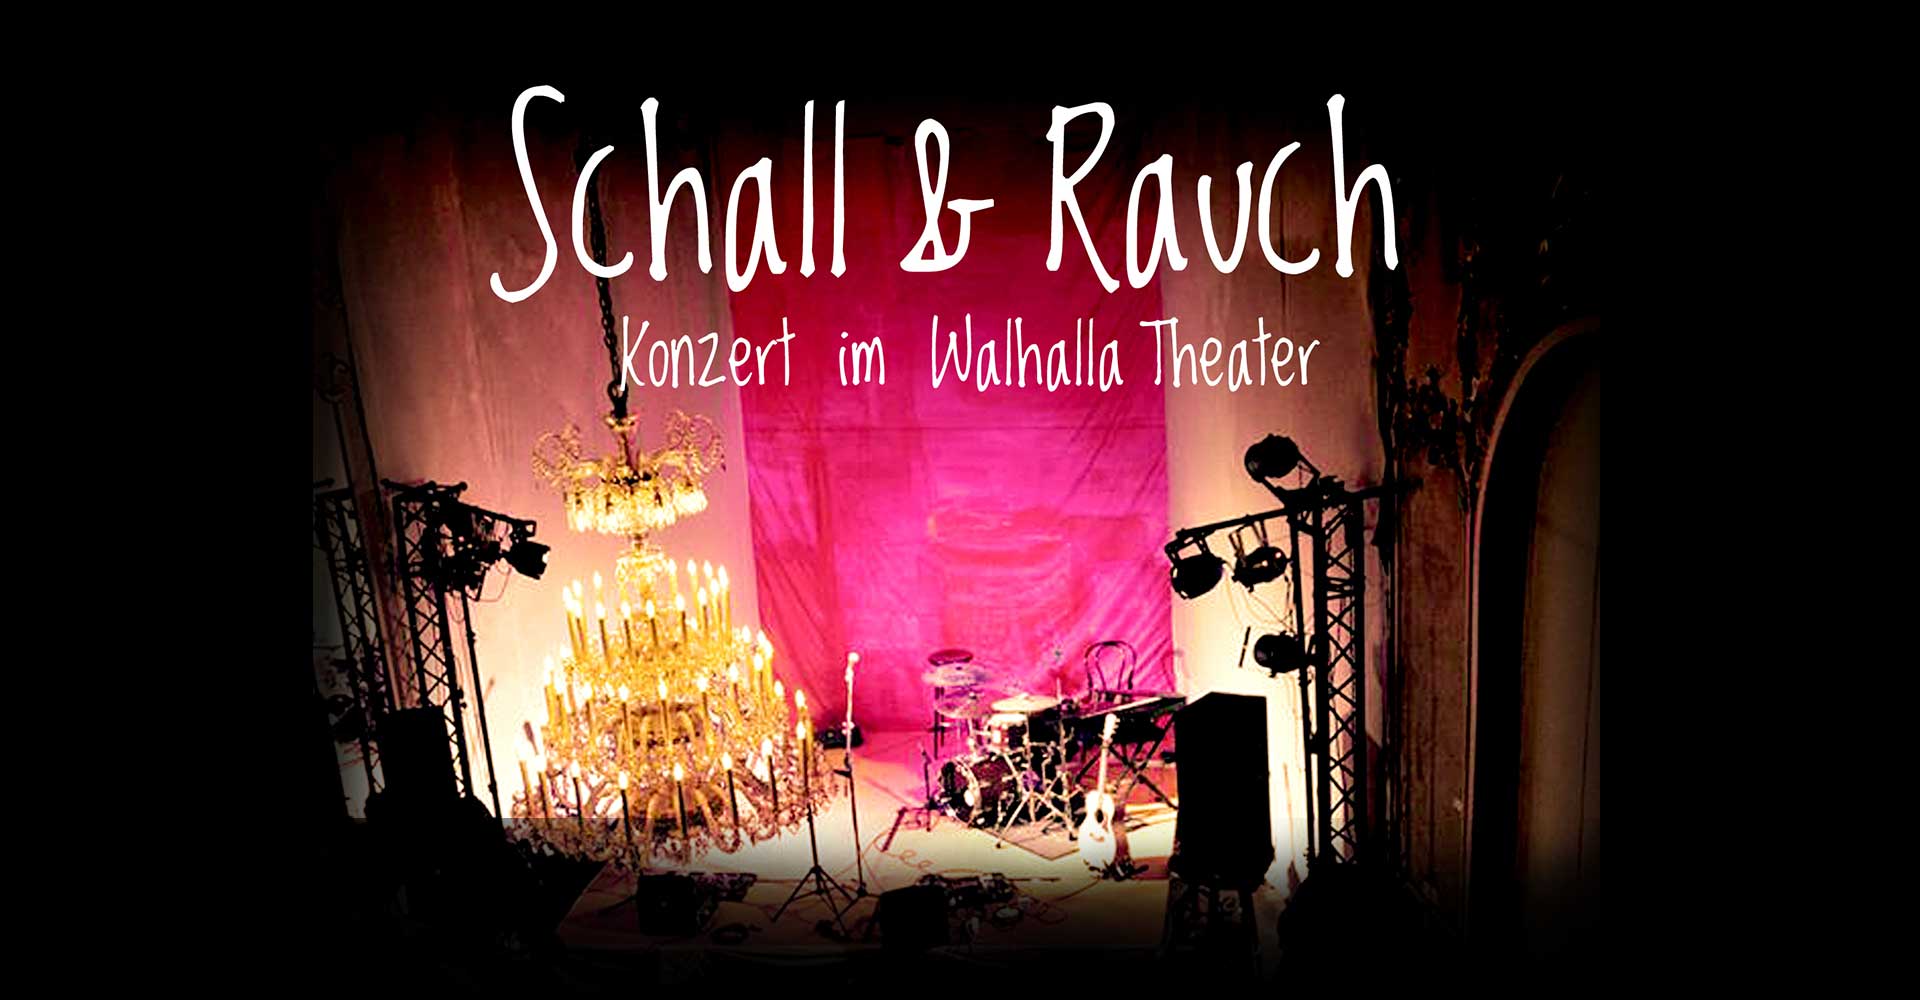 Musikmaschine-Mainz-Wiesbaden-Frankfurt-konzerte-events-markt-veranstaltungen-musik-live-booking-promo-schall-und-rauch-walhalla